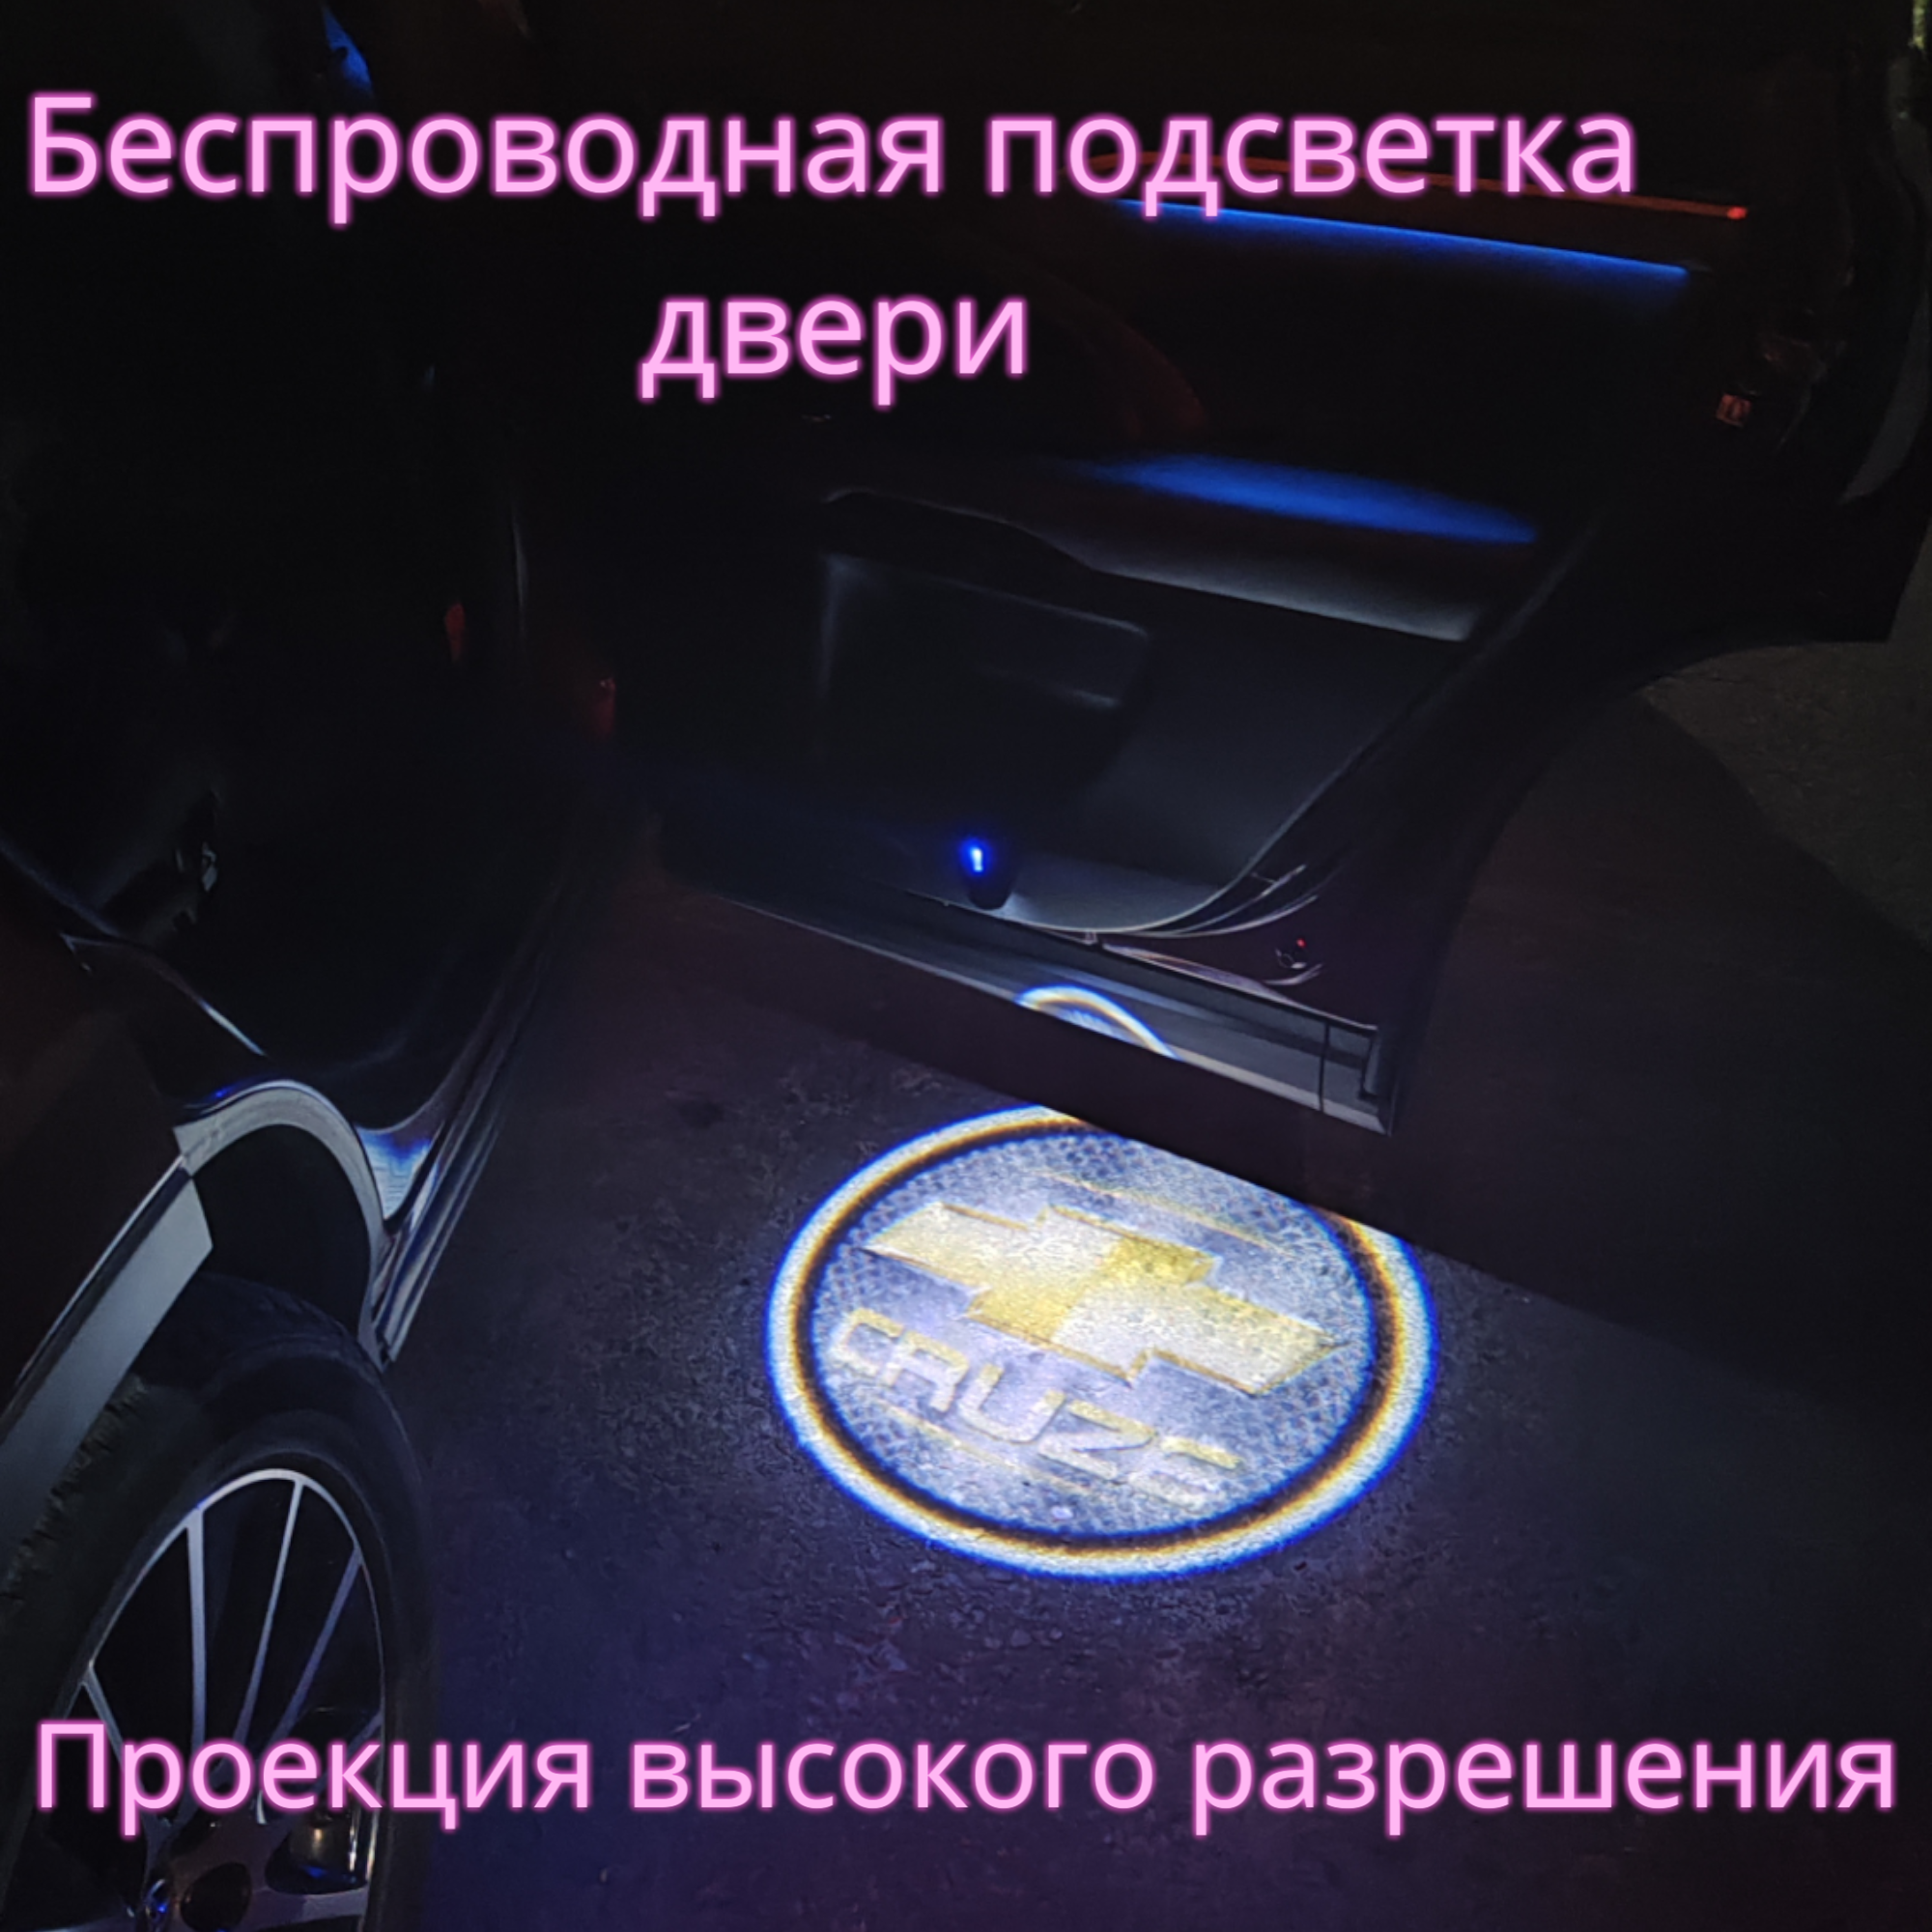 Проекция логотипа авто/Беспроводная подсветка логотипа Chevrolet Cruze на двери(49)/Светильник высокого разрешения с двери авто (1 шт.)